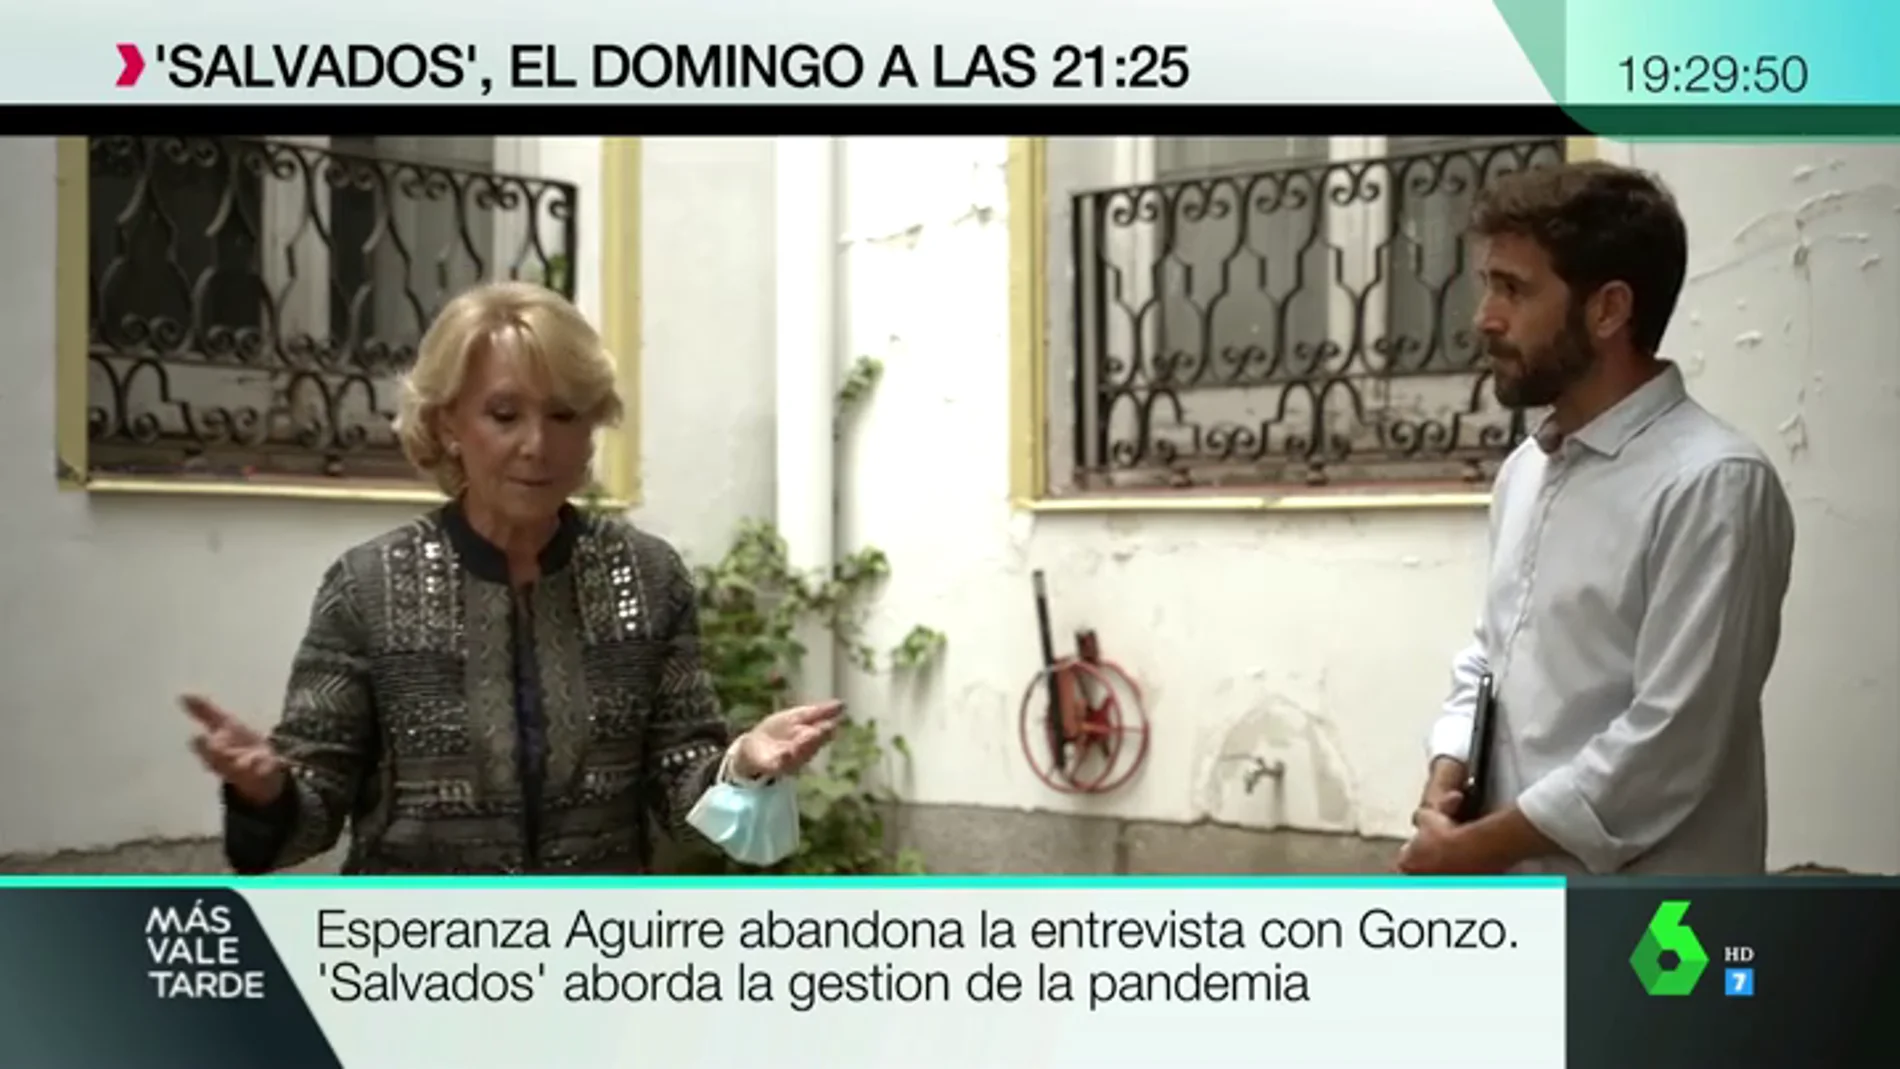 La pregunta de 'Salvados' sobre las carencias en el sistema sanitario madrileño que hace que Esperanza Aguirre abandone su entrevista